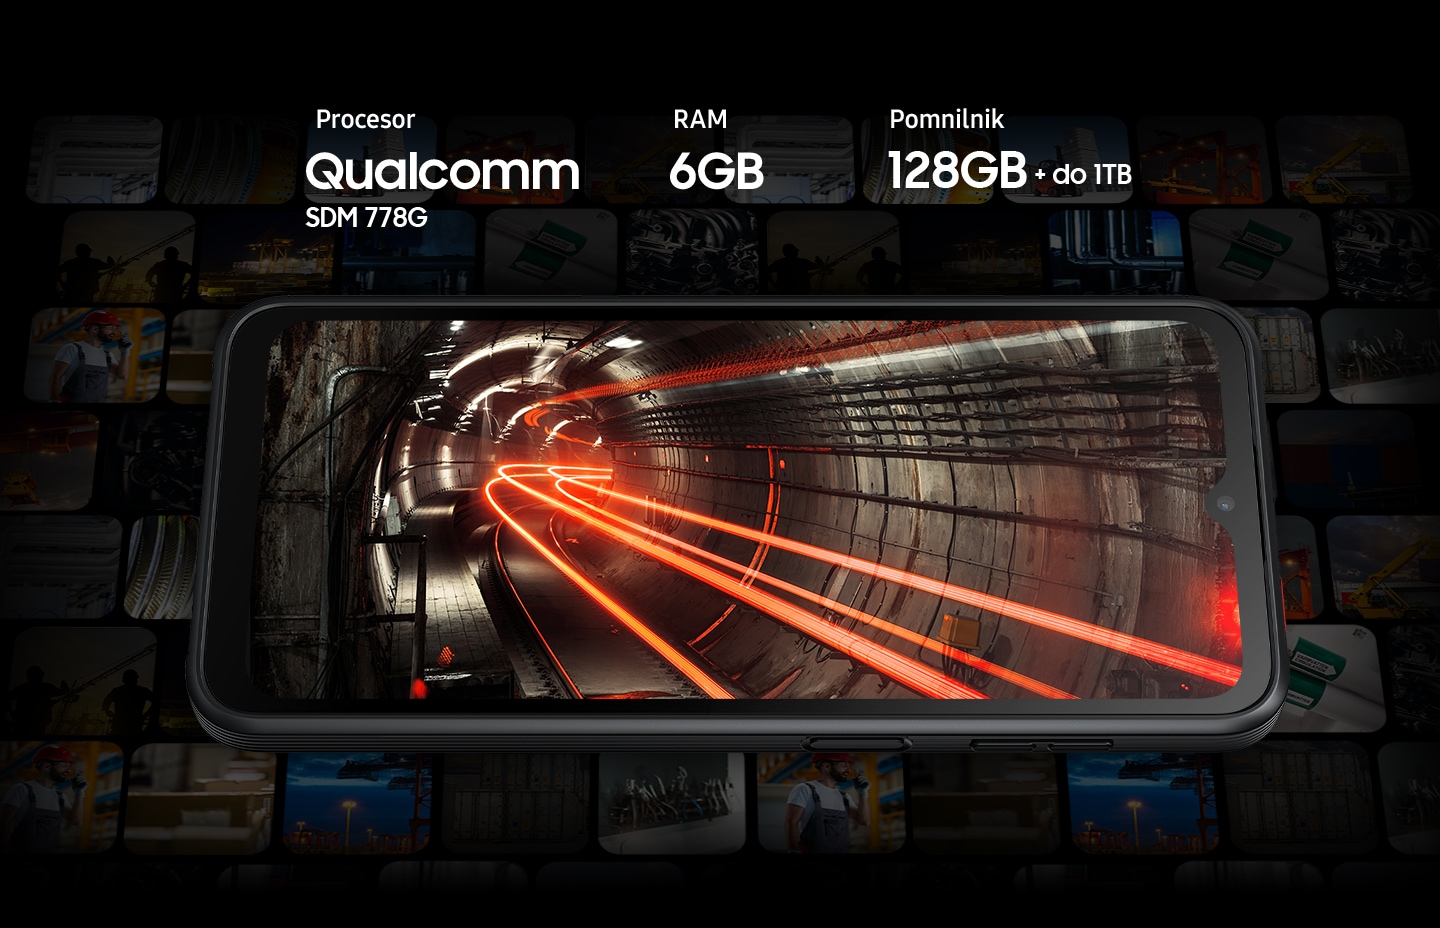 Galaxy XCover6 Pro prikazuje ozadje podzemnega tunela na zaslonu, na katerem so prikazane tudi rdeče vroče cevi. Okoli pametnega telefona so obledele sličice različnih vsebin.